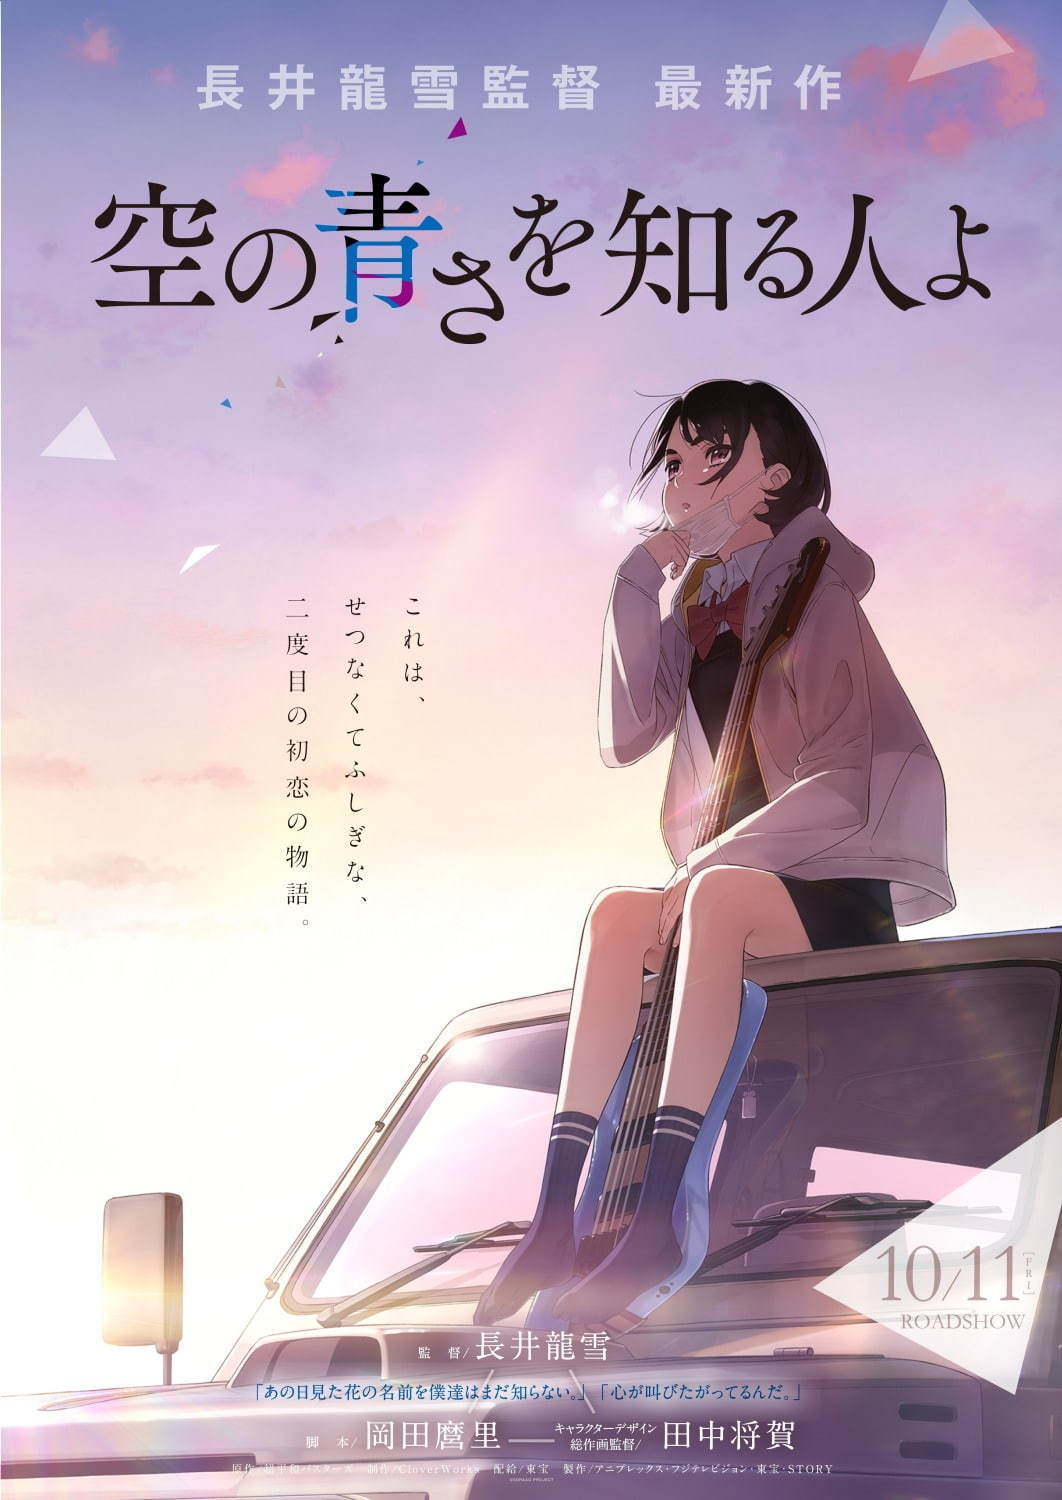 映画『空の青さを知る人よ』長井龍雪による新作長編オリジナルアニメ